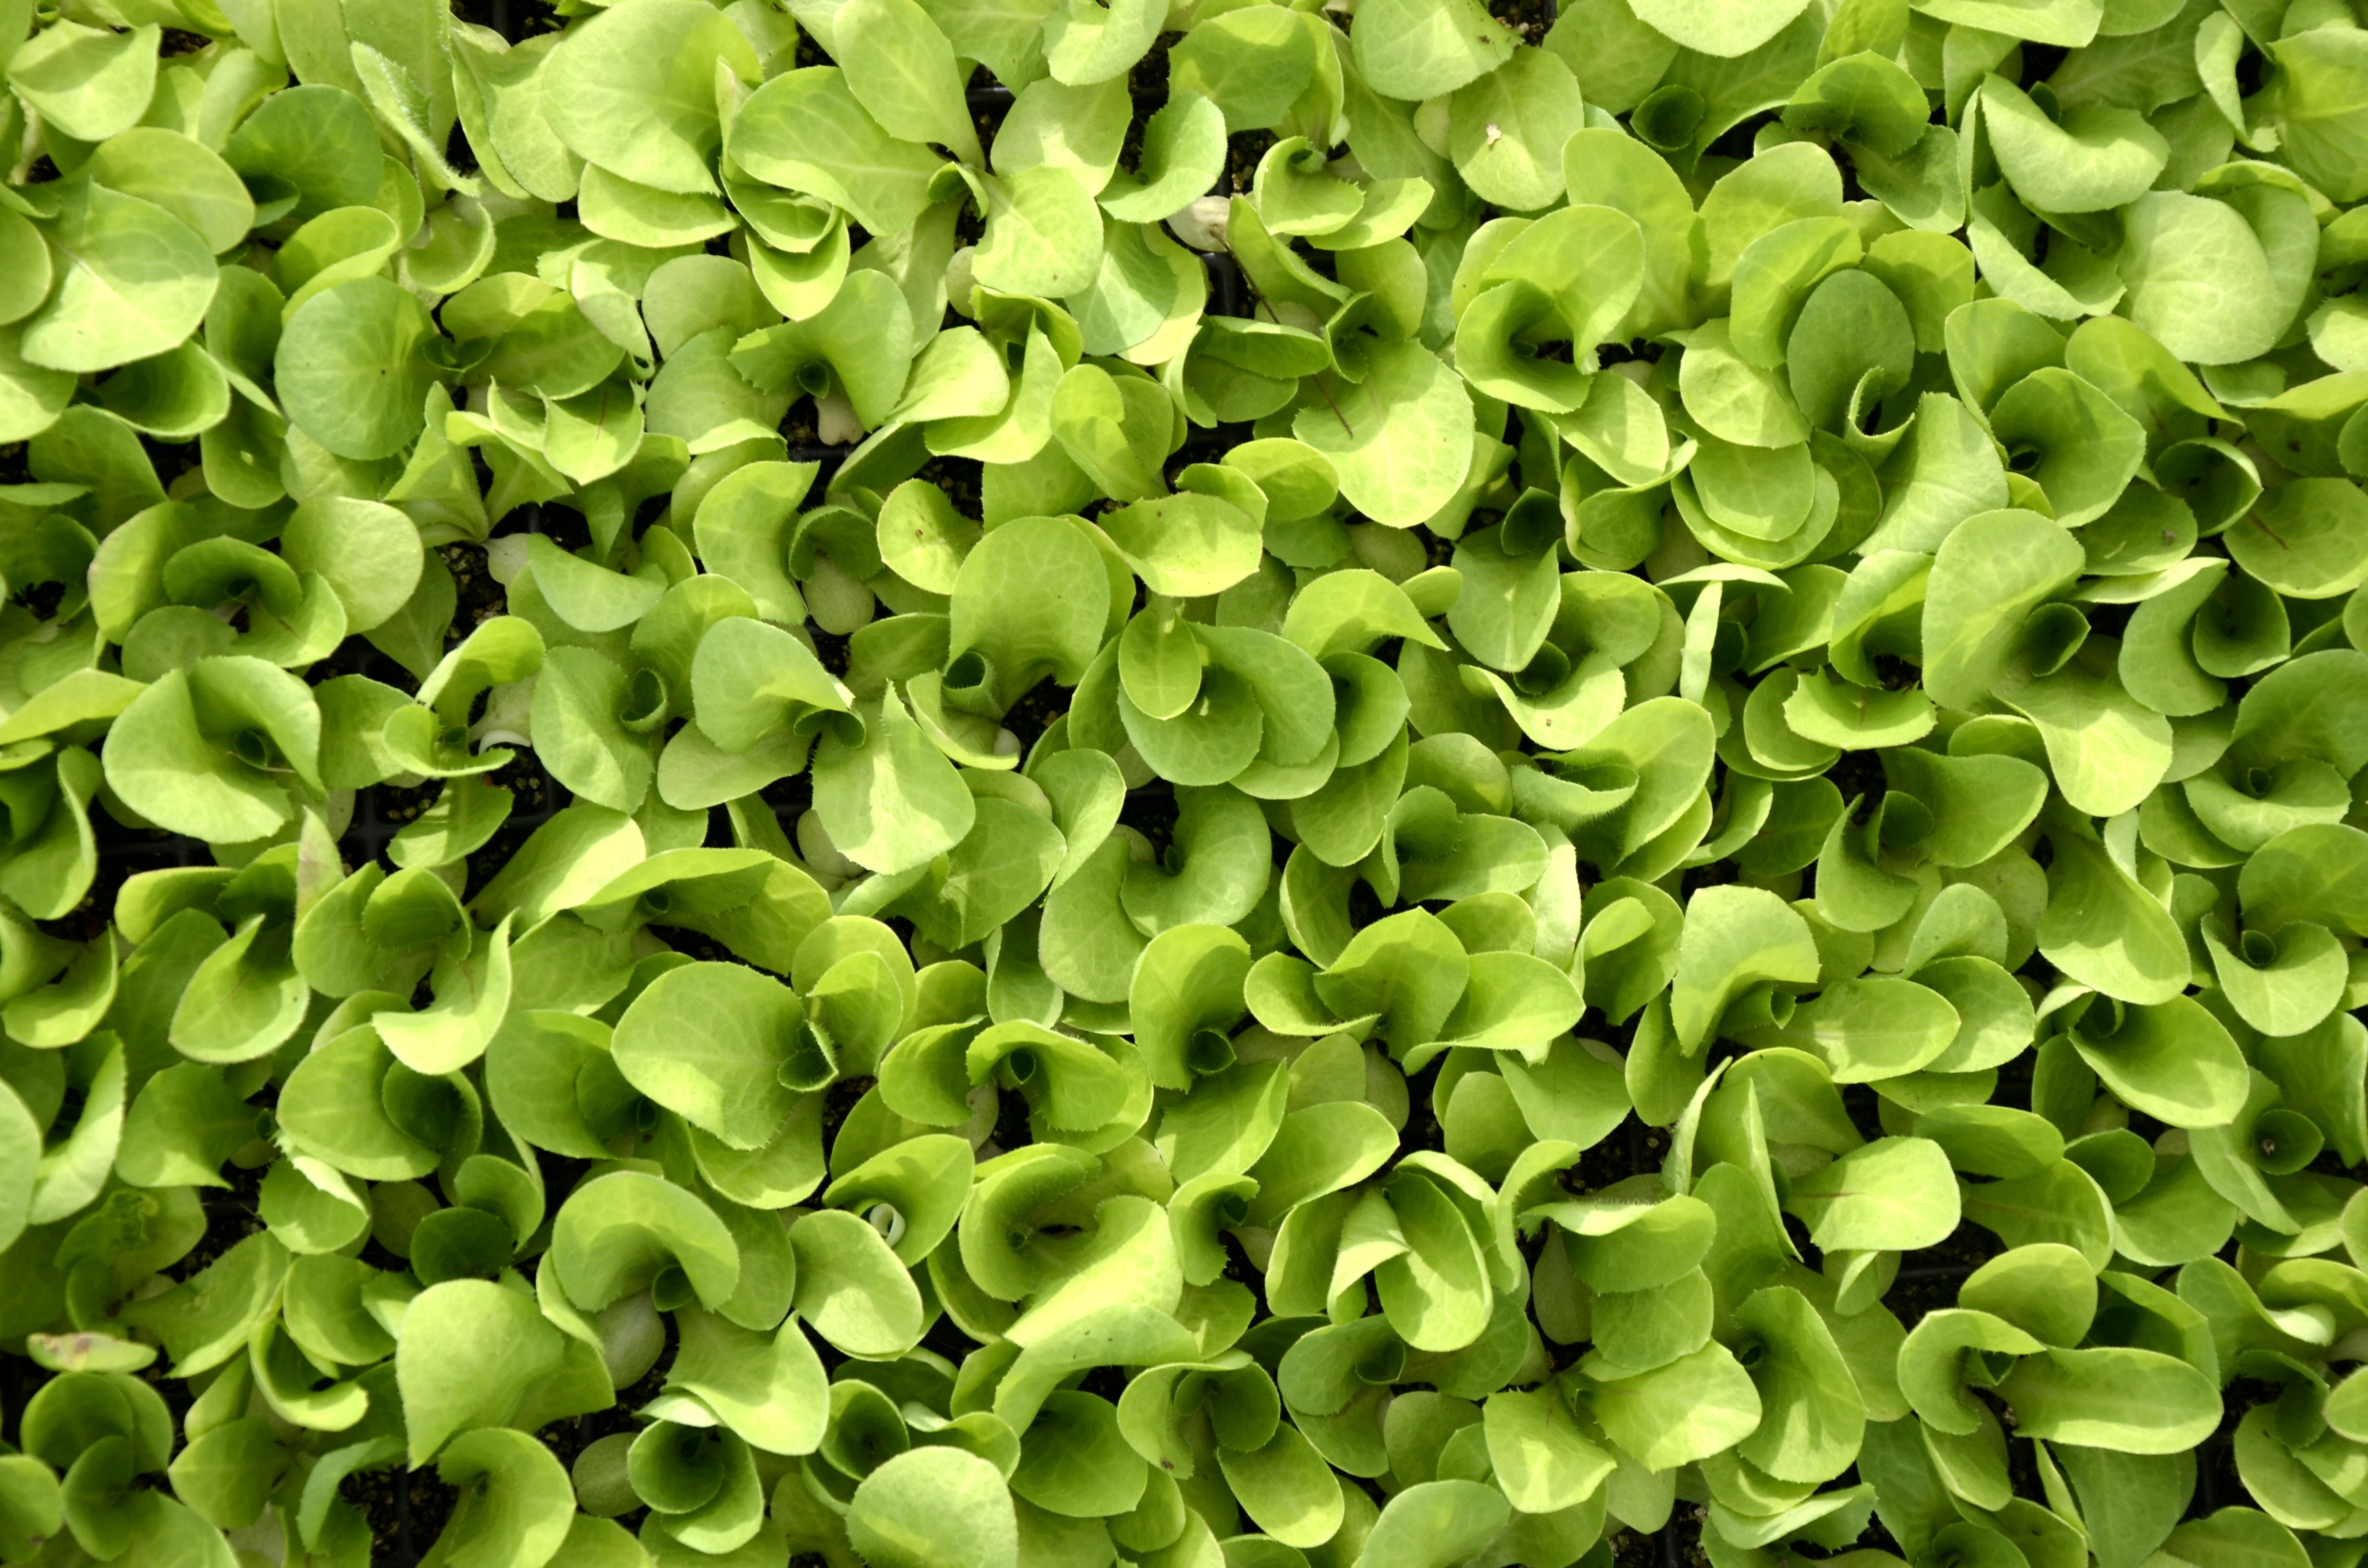 Green, Lettuce, Plant, Texture, green color, full frame